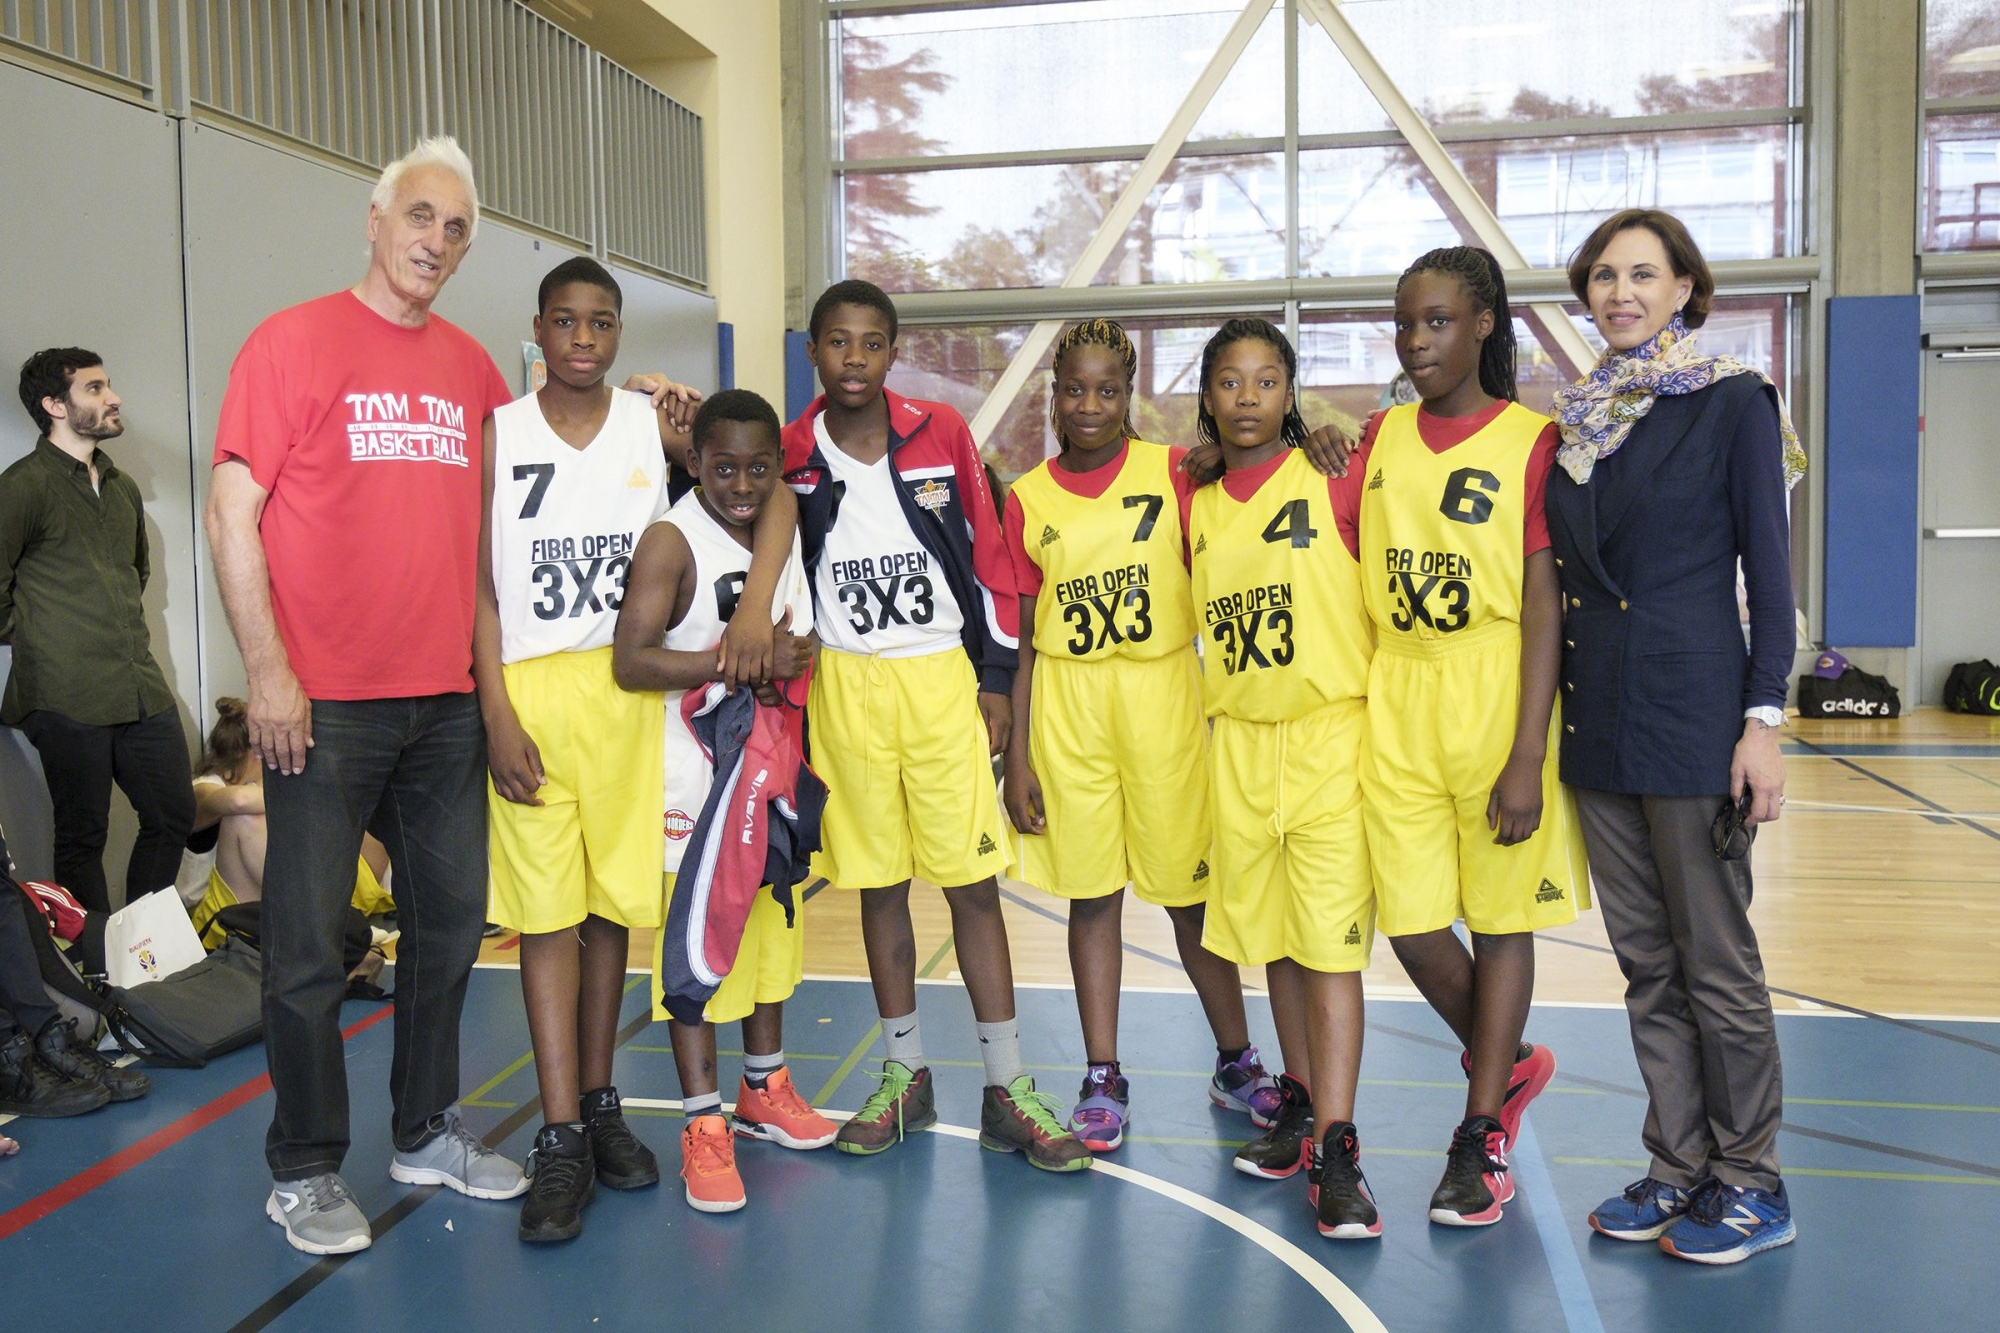 Président et coach des équipes de Tam Tam Basket, Massimo Antonelli a fait le déplacement à Mies en compagnie d'Antonella Cecatto, vice-présidente, et de six joueurs.